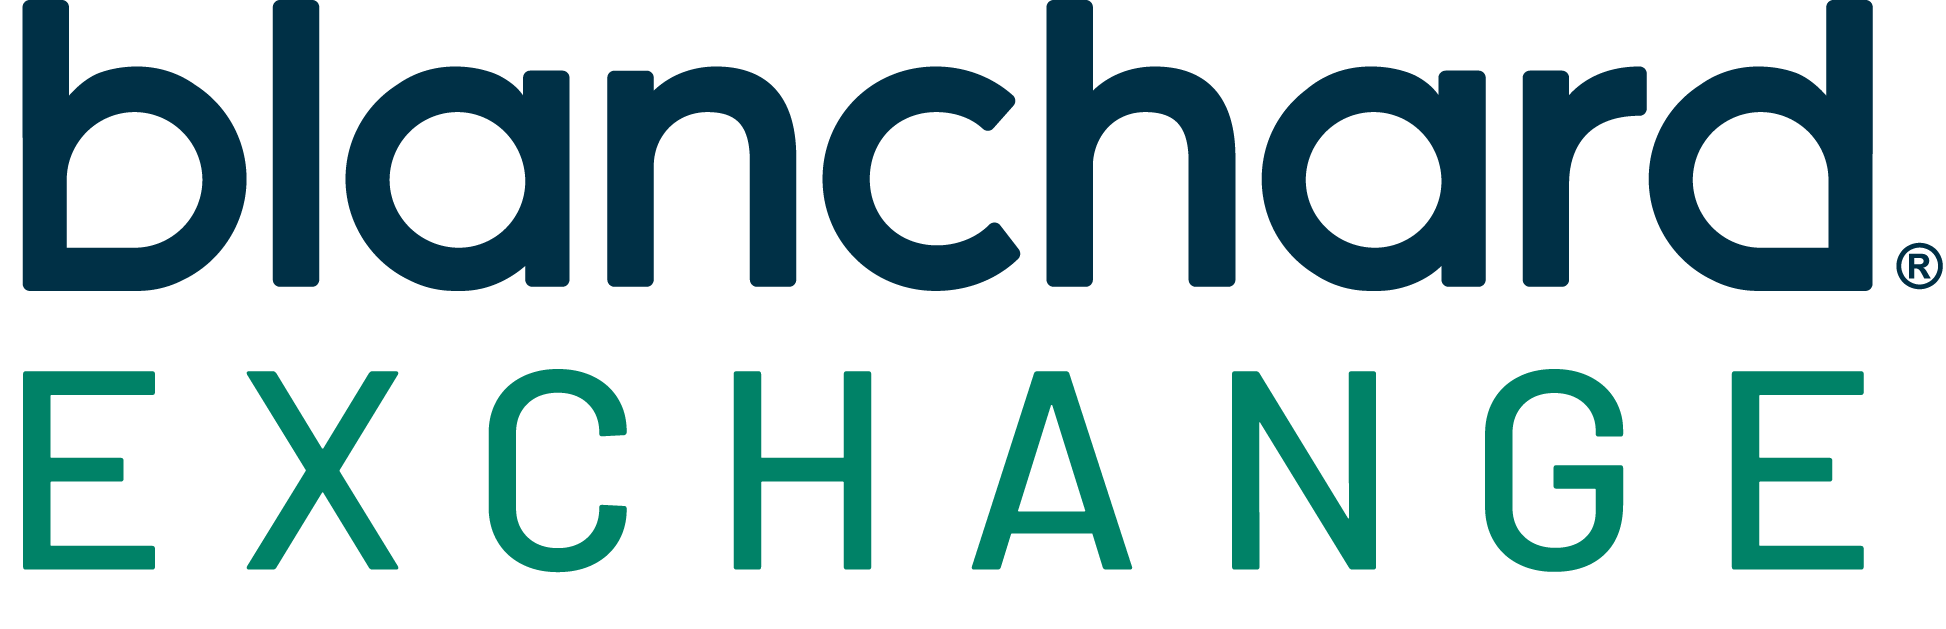 Blanchard Exchange Logo